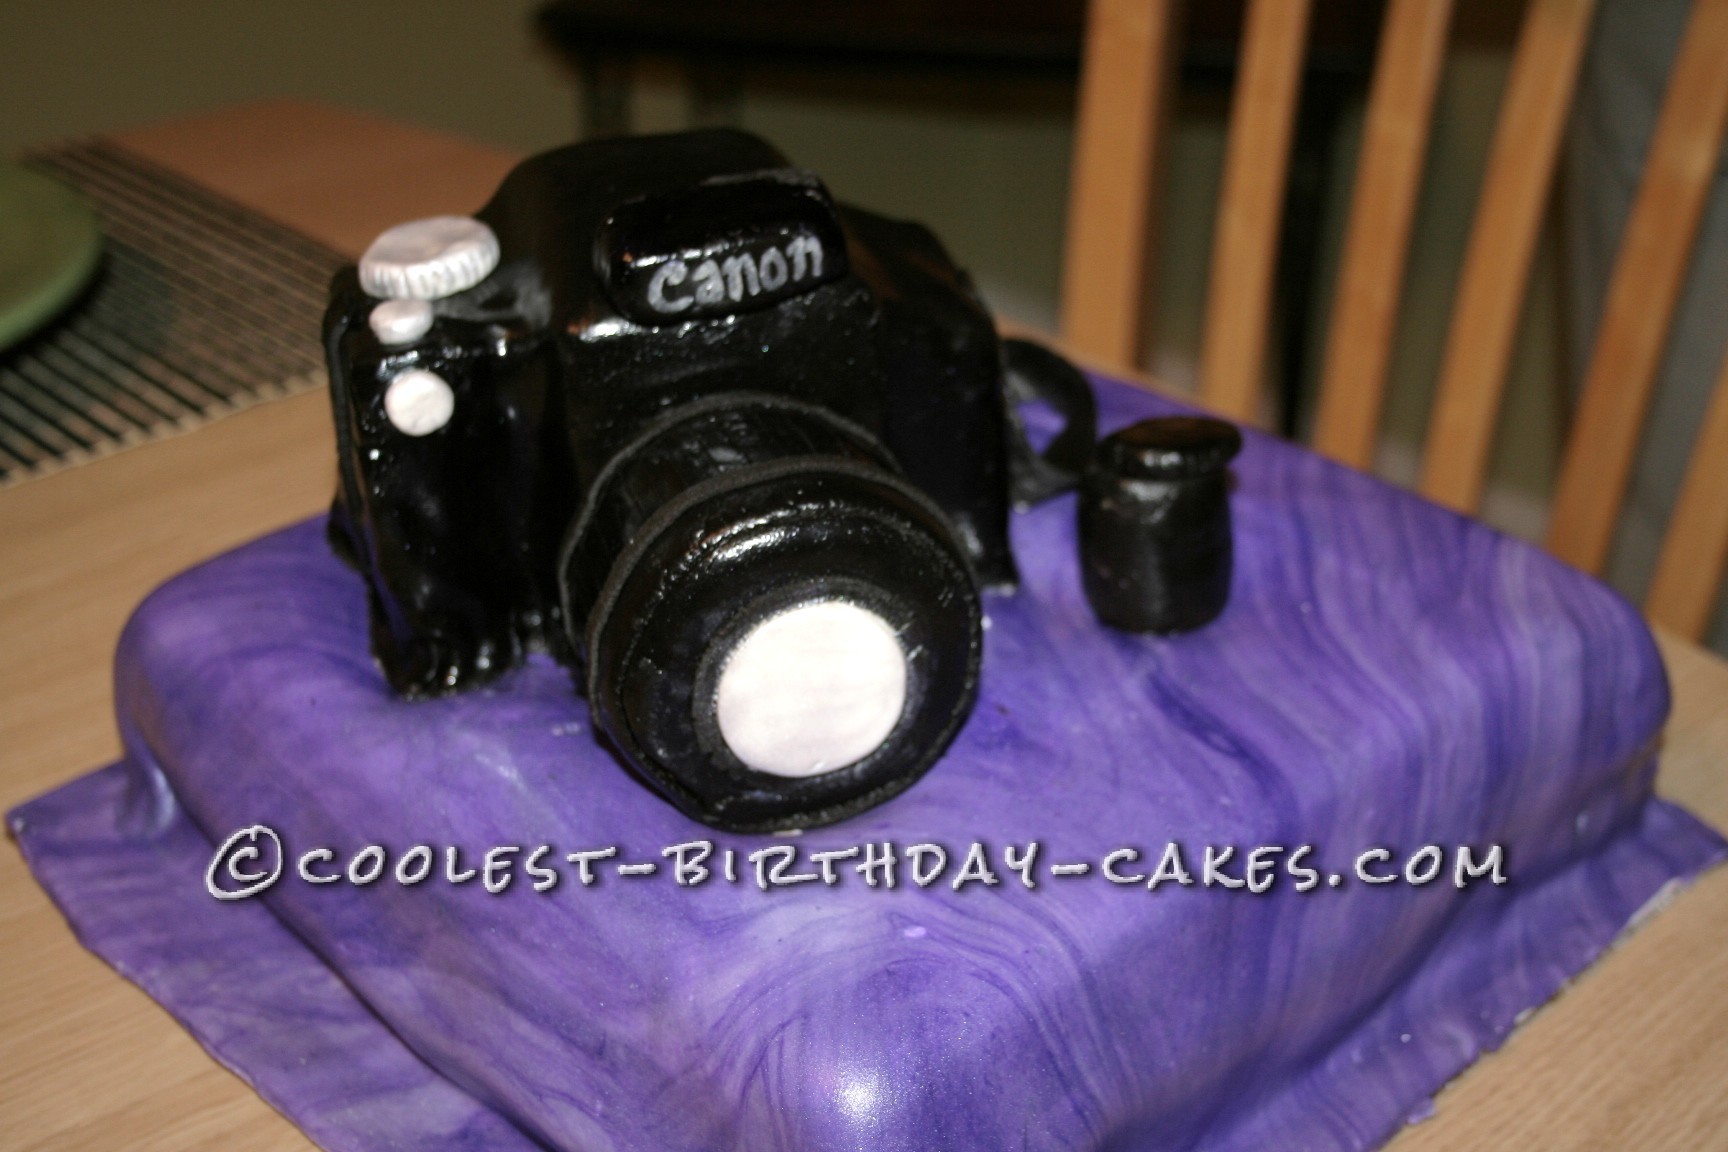 Camera Cake for a Photographer